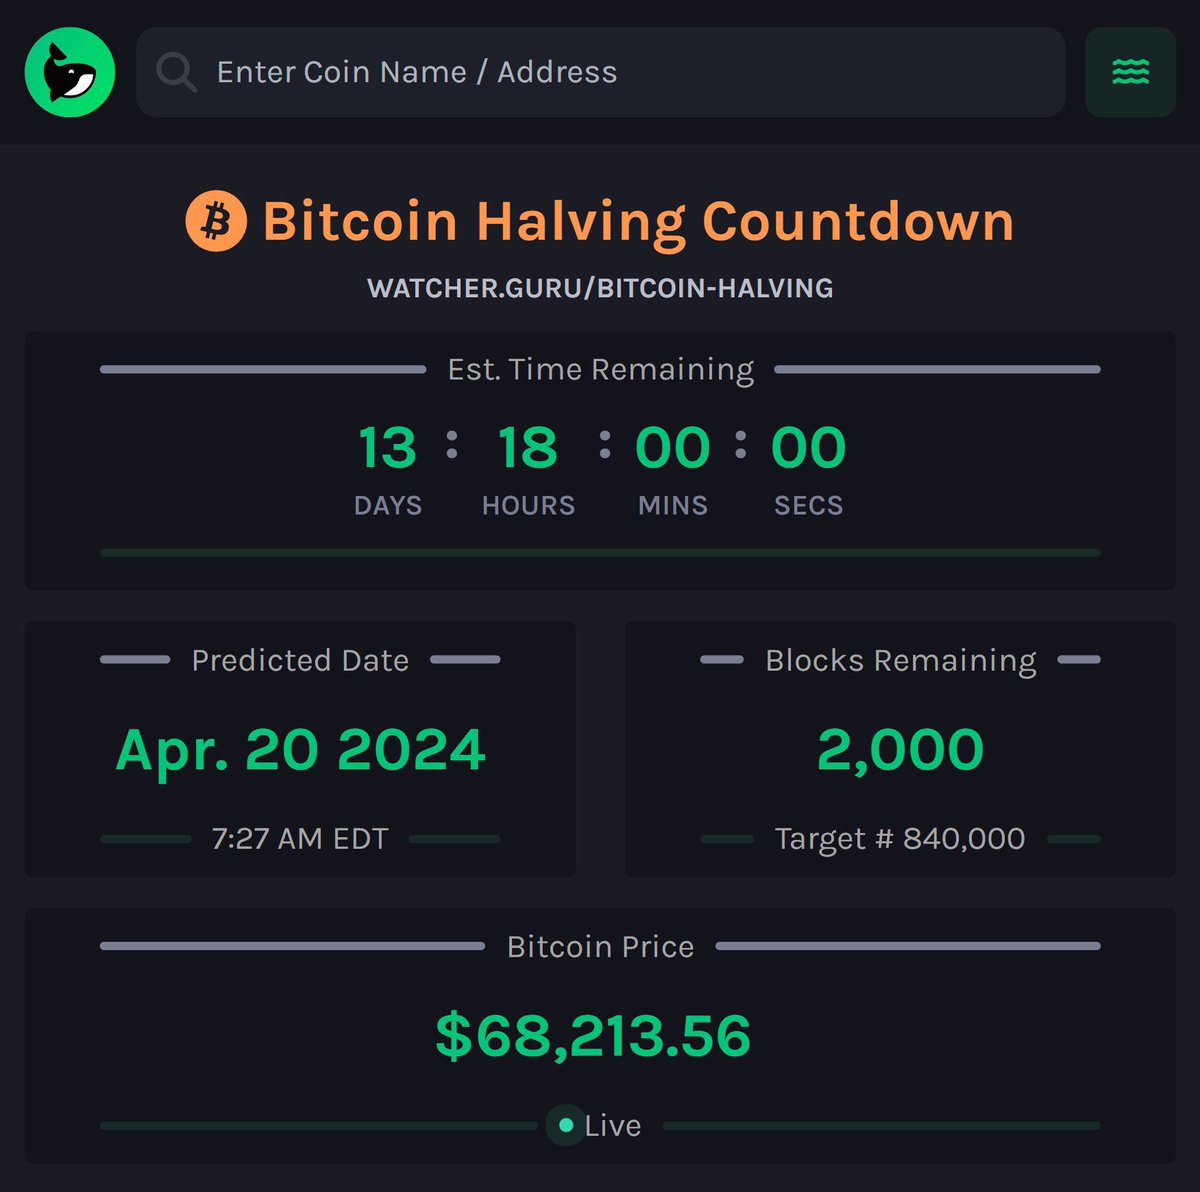 #Bitcoin Halving'e 2 hafta ve 2.000 blok kaldı ⚡️